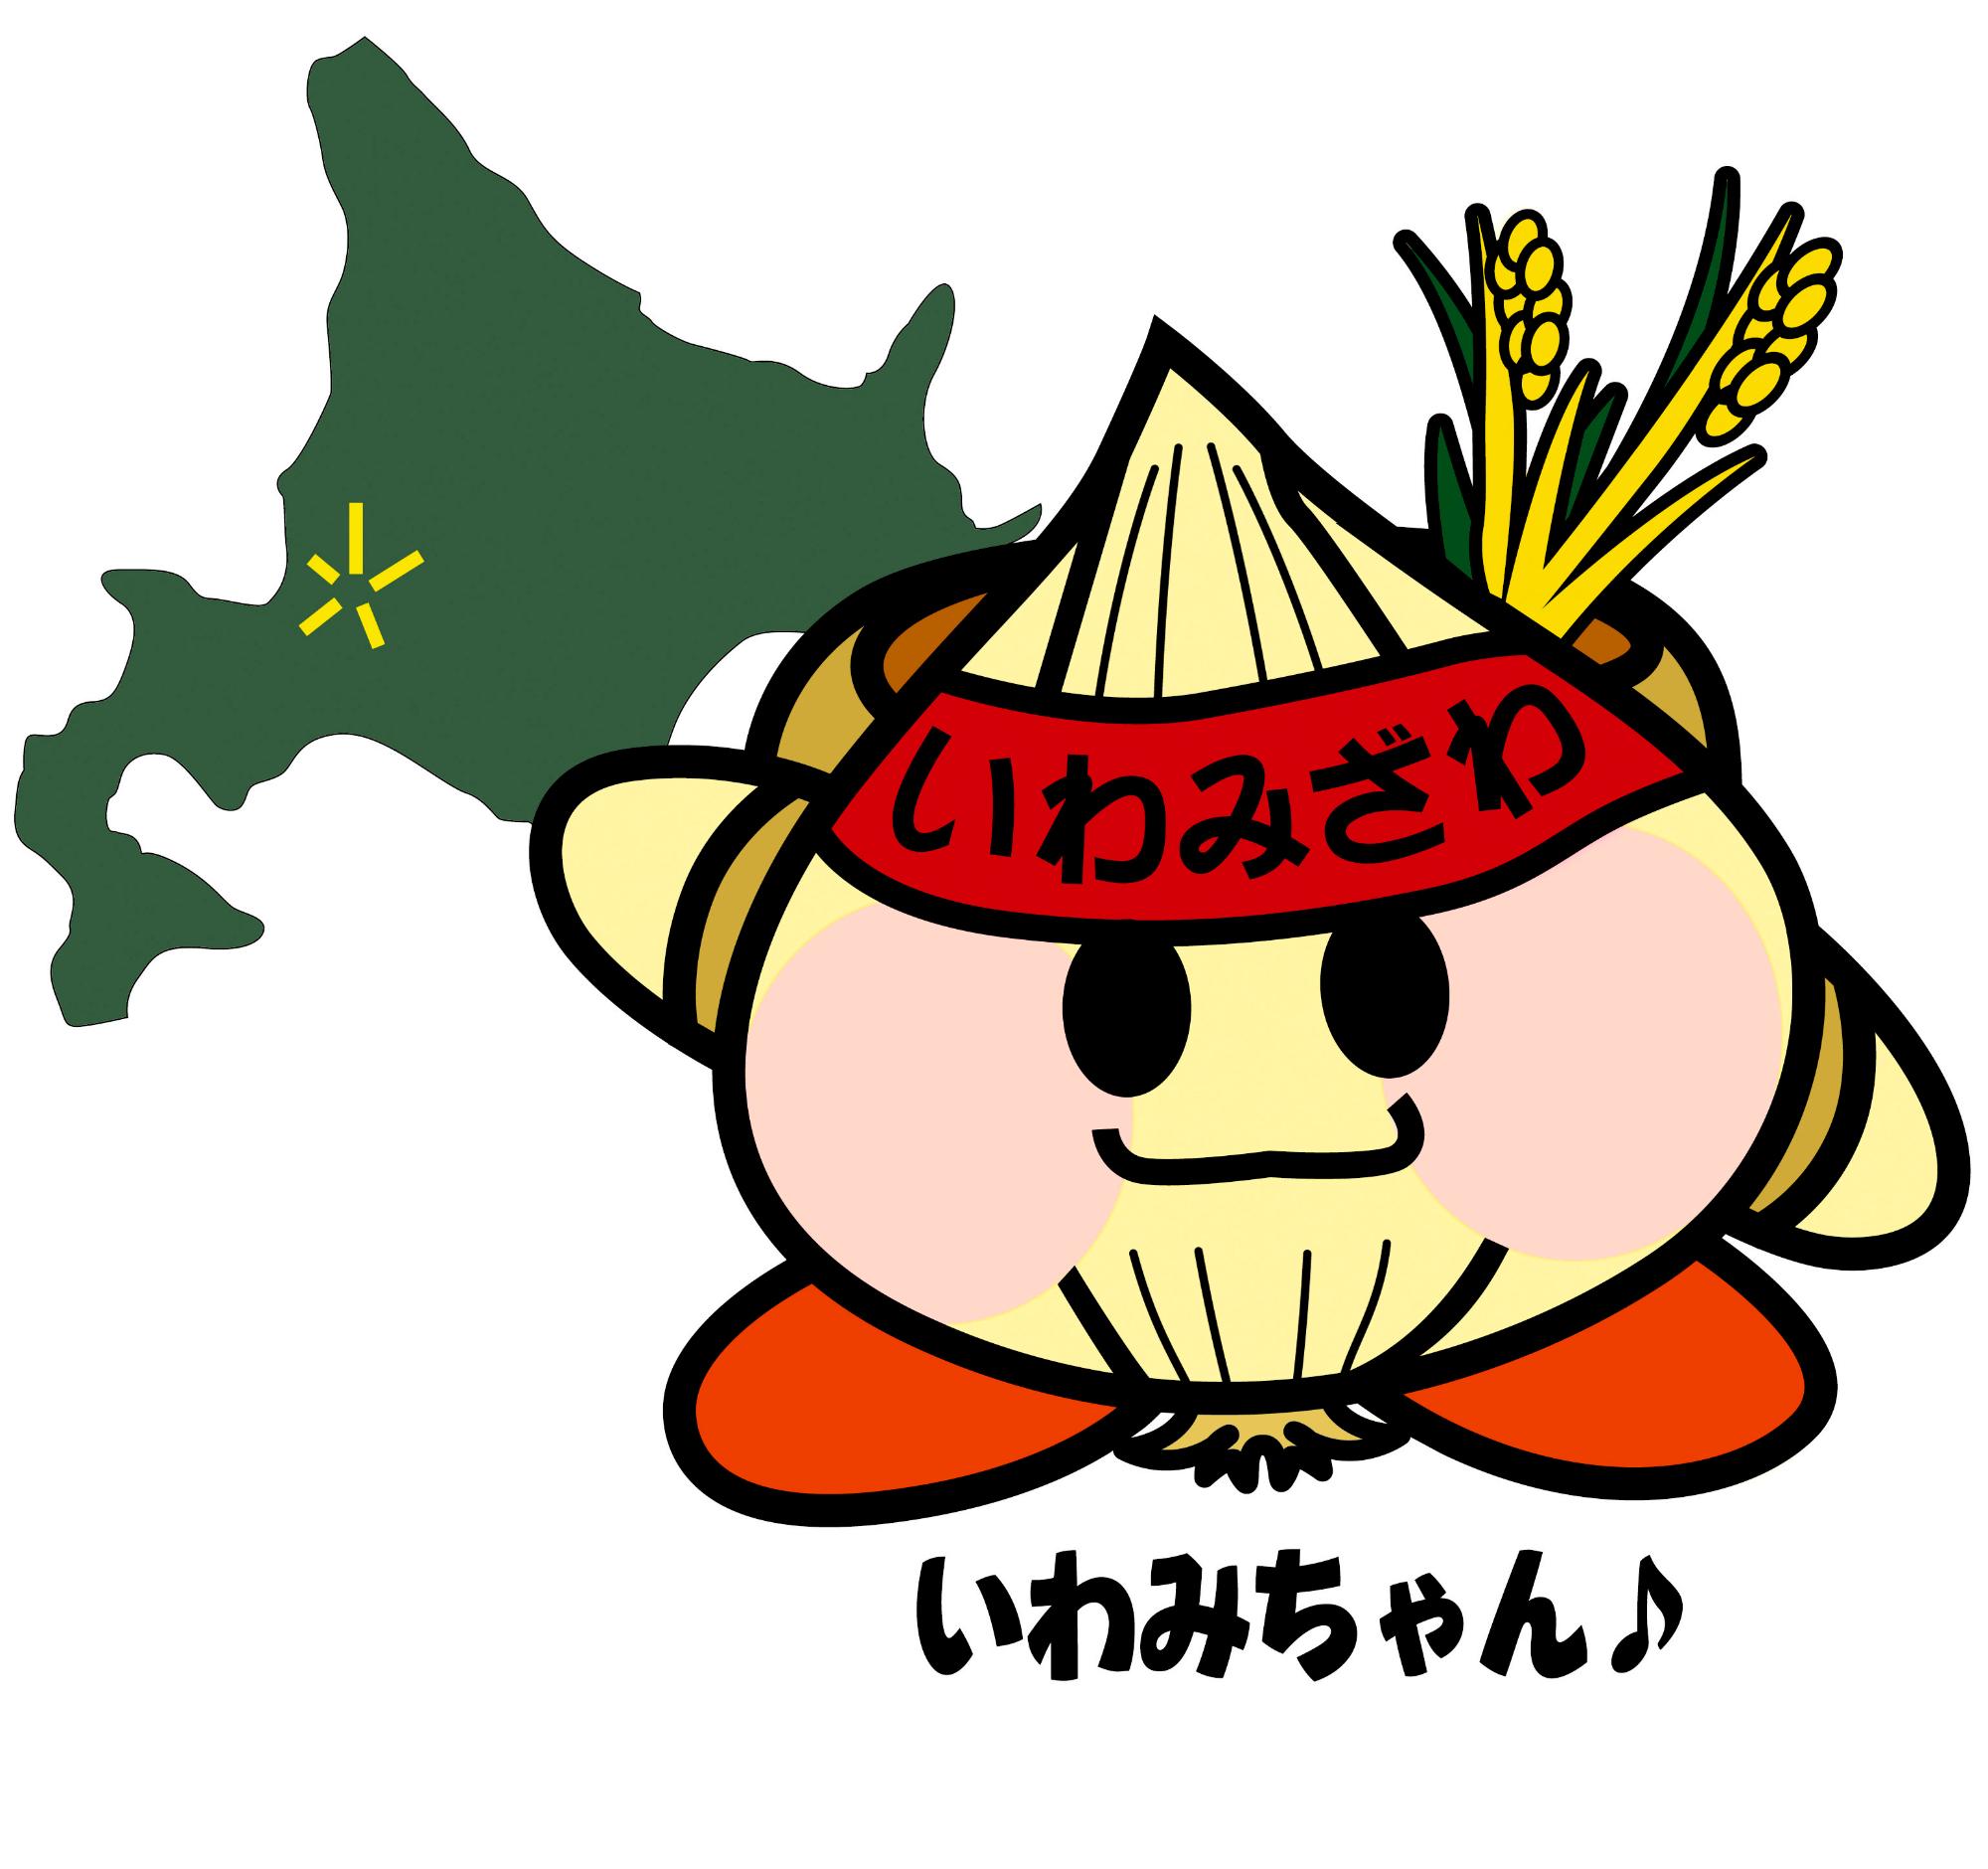 岩見沢市公認キャラクターいわみちゃんが稲を背中に背負っているイラスト